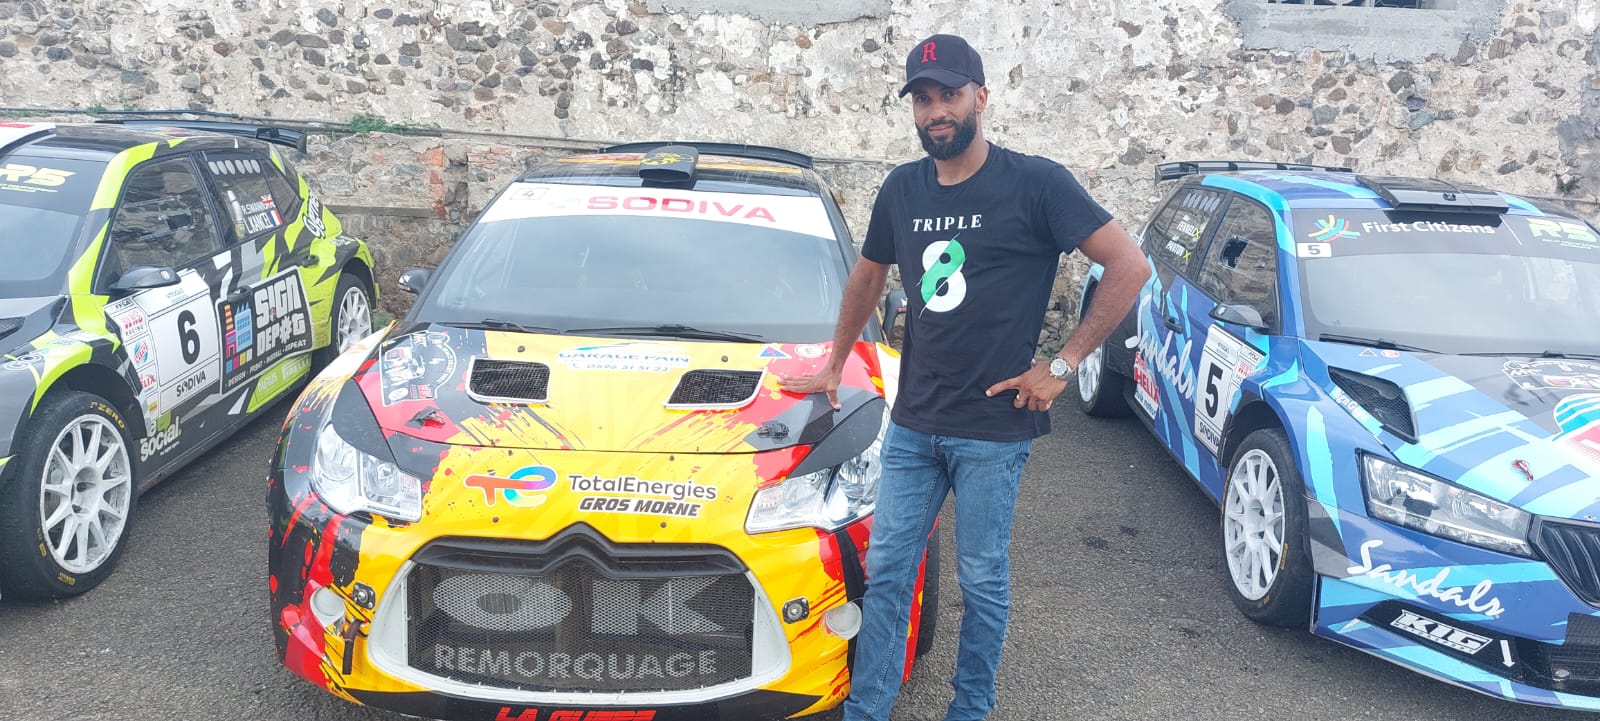     Steven Orosemane remporte la 5ème édition du Martinique Rallye Tour

